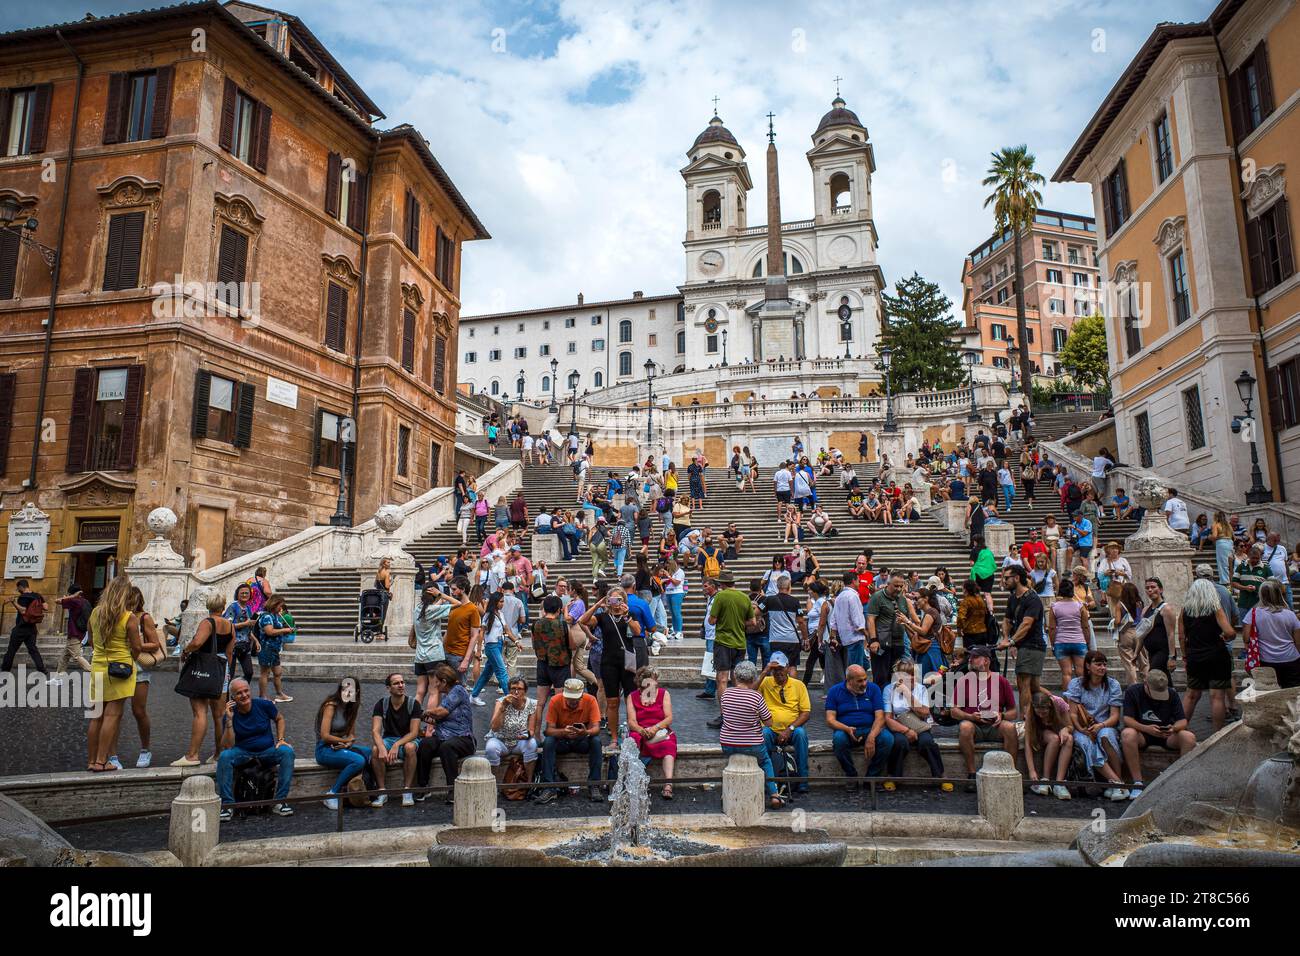 Beaucoup de touristes à la place d'Espagne à Rome, Italie Banque D'Images